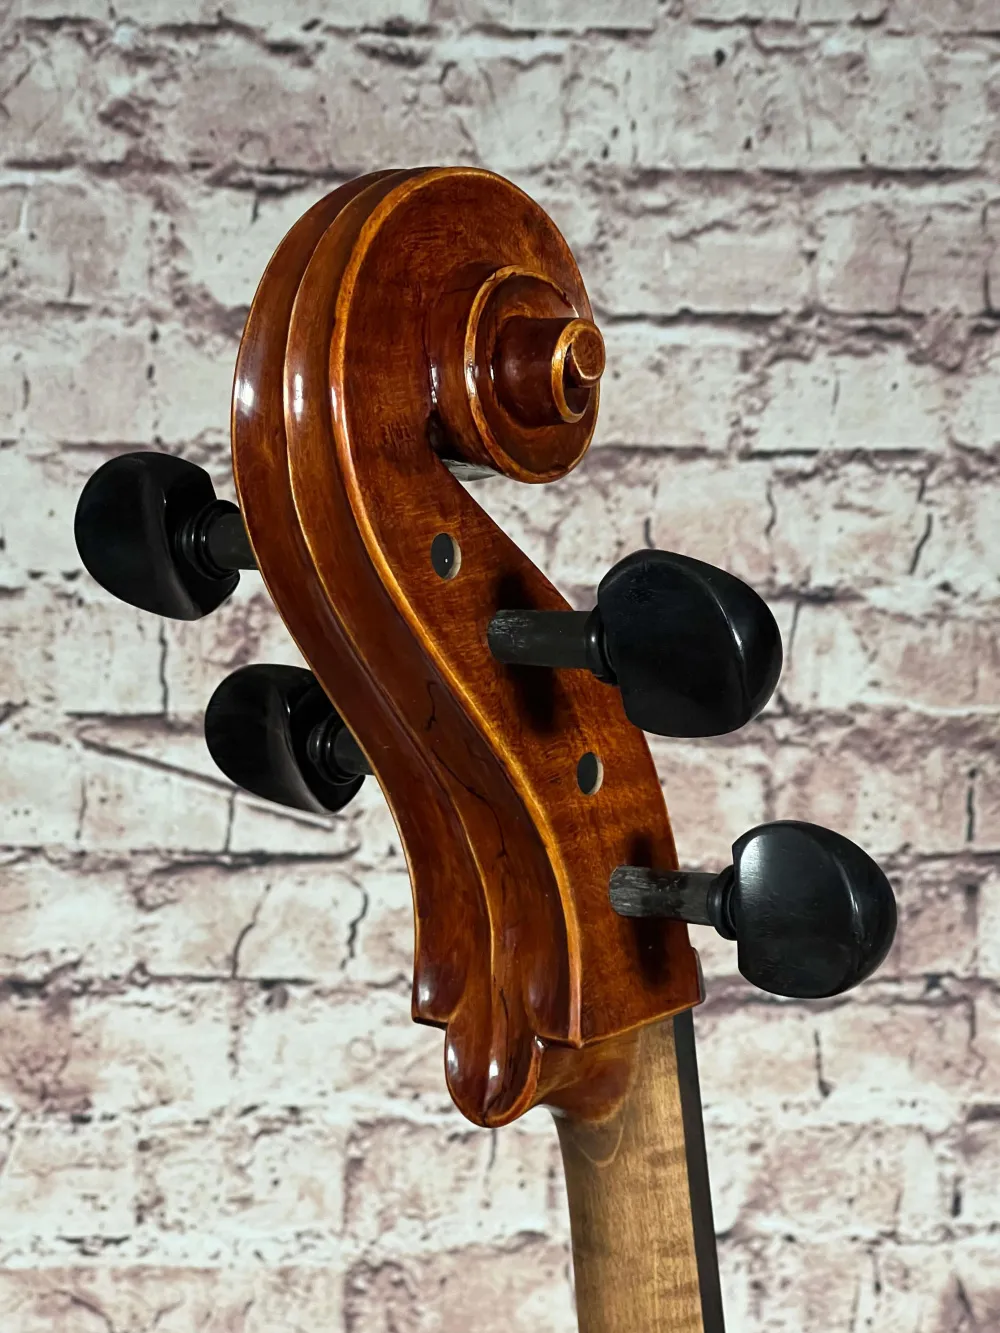 Schnecke-unten-seitlich-Detailansicht eines nicht spielfertiges Cello (Violoncello) Handarbeit 2022